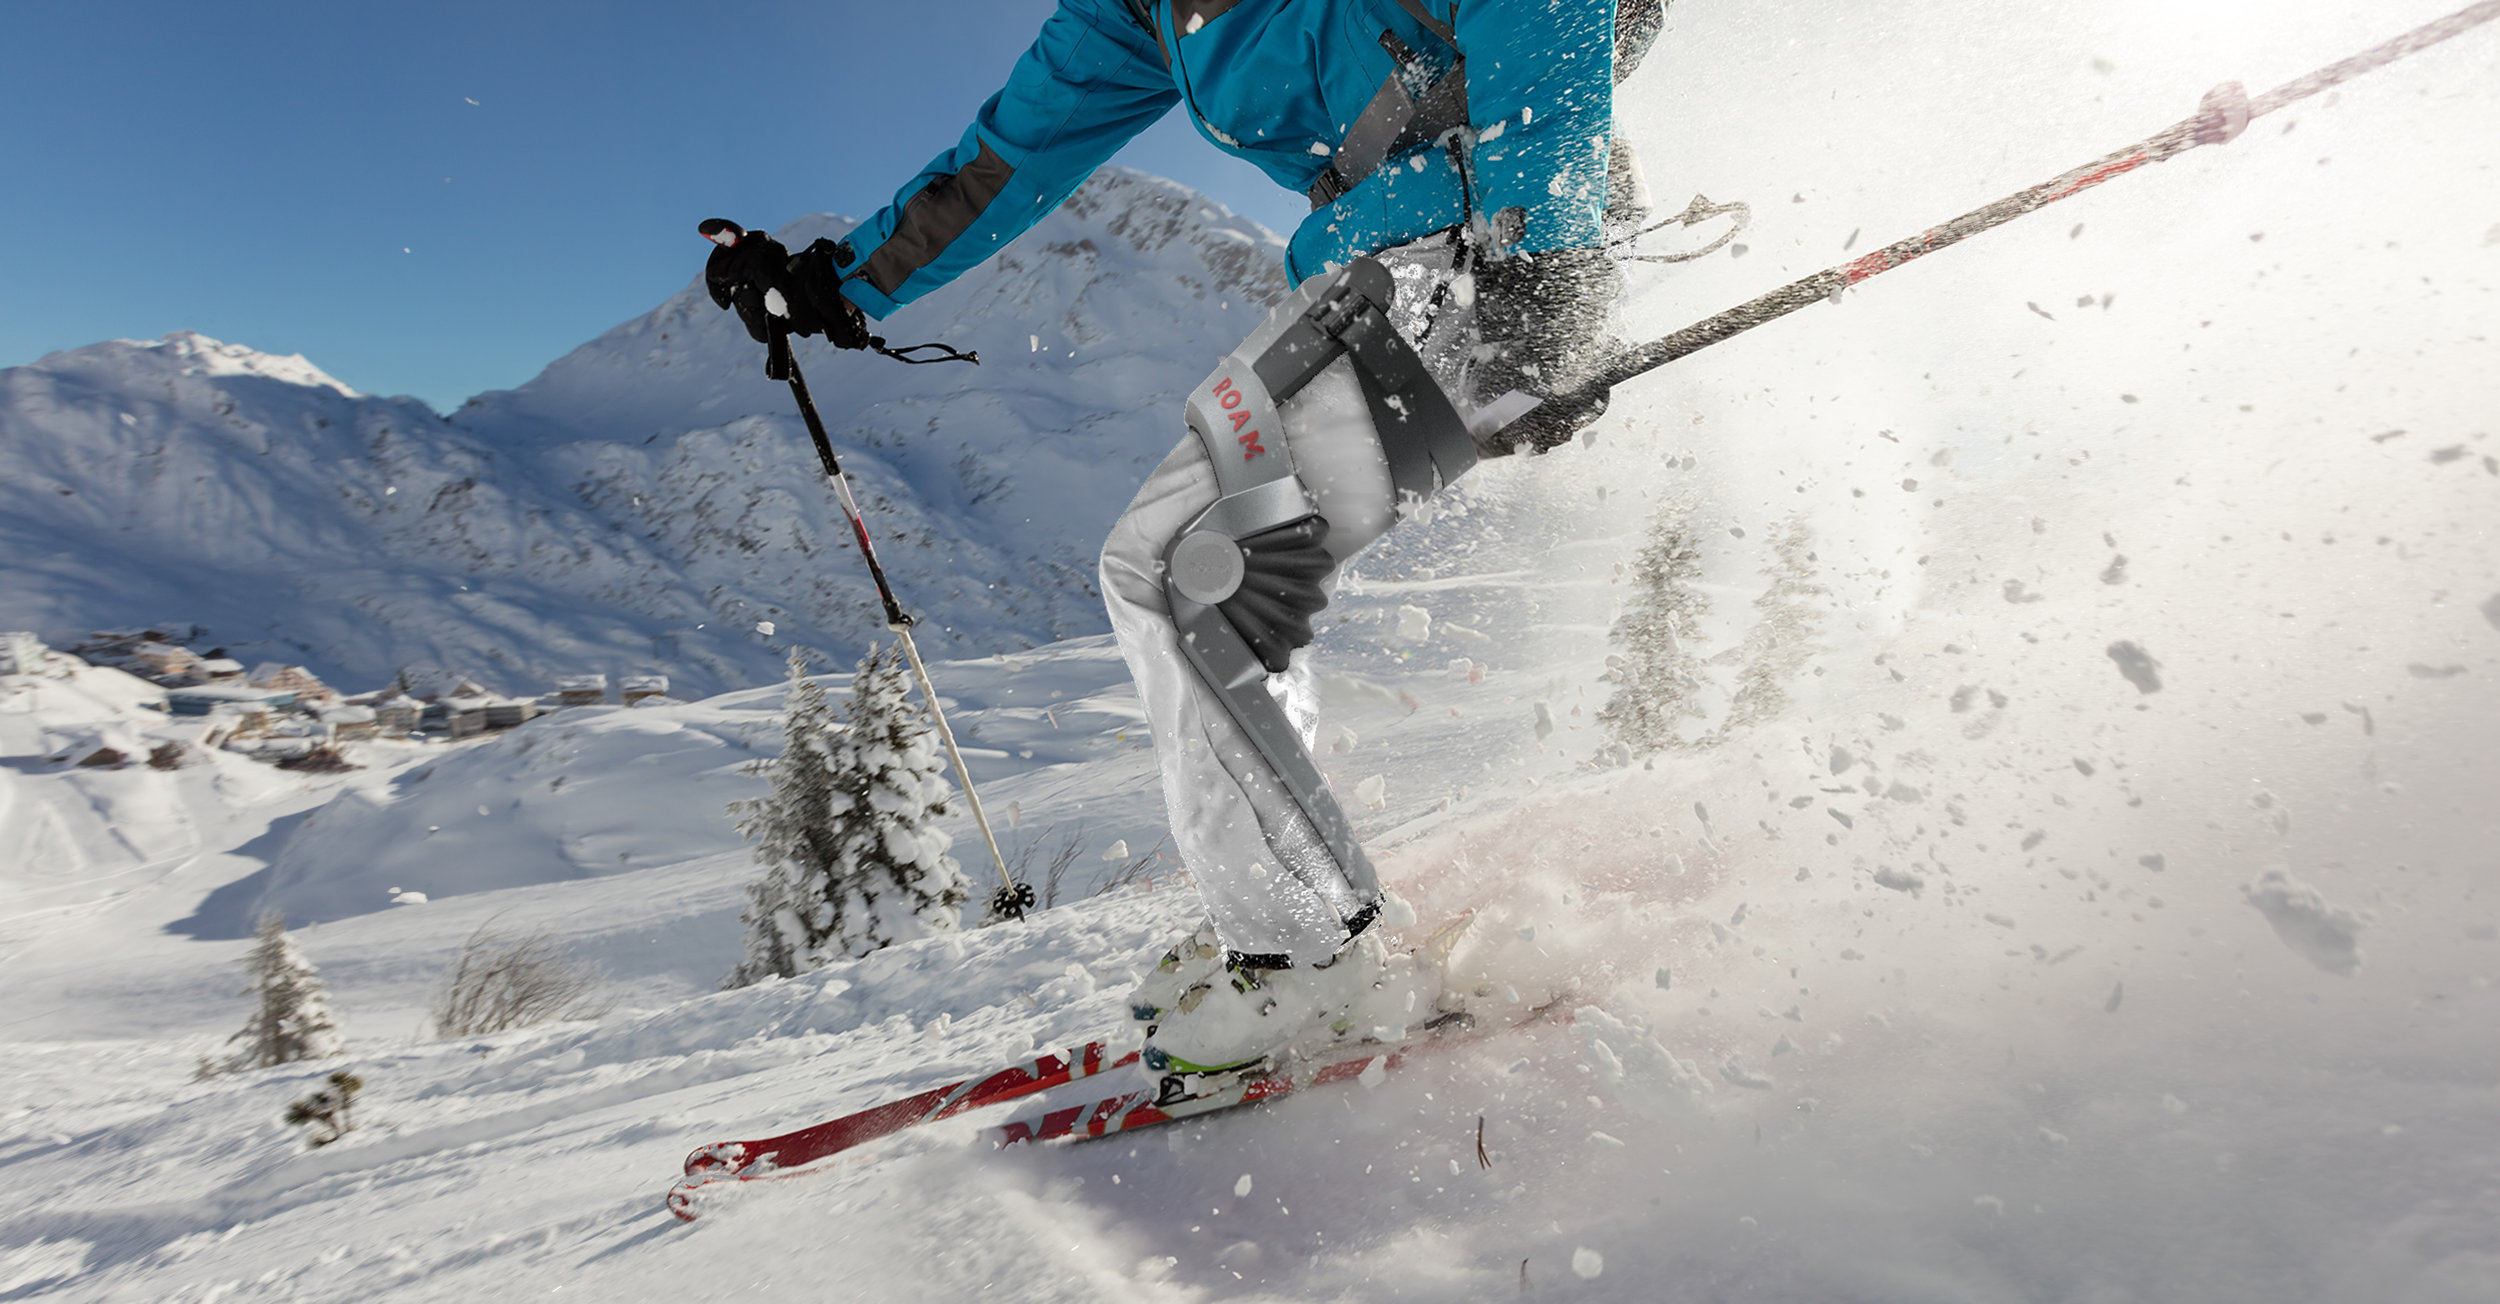 Los exoesqueletos en el mundo del esquí han llegado para quedarse ¿esquiar sin parar y sin dolor?